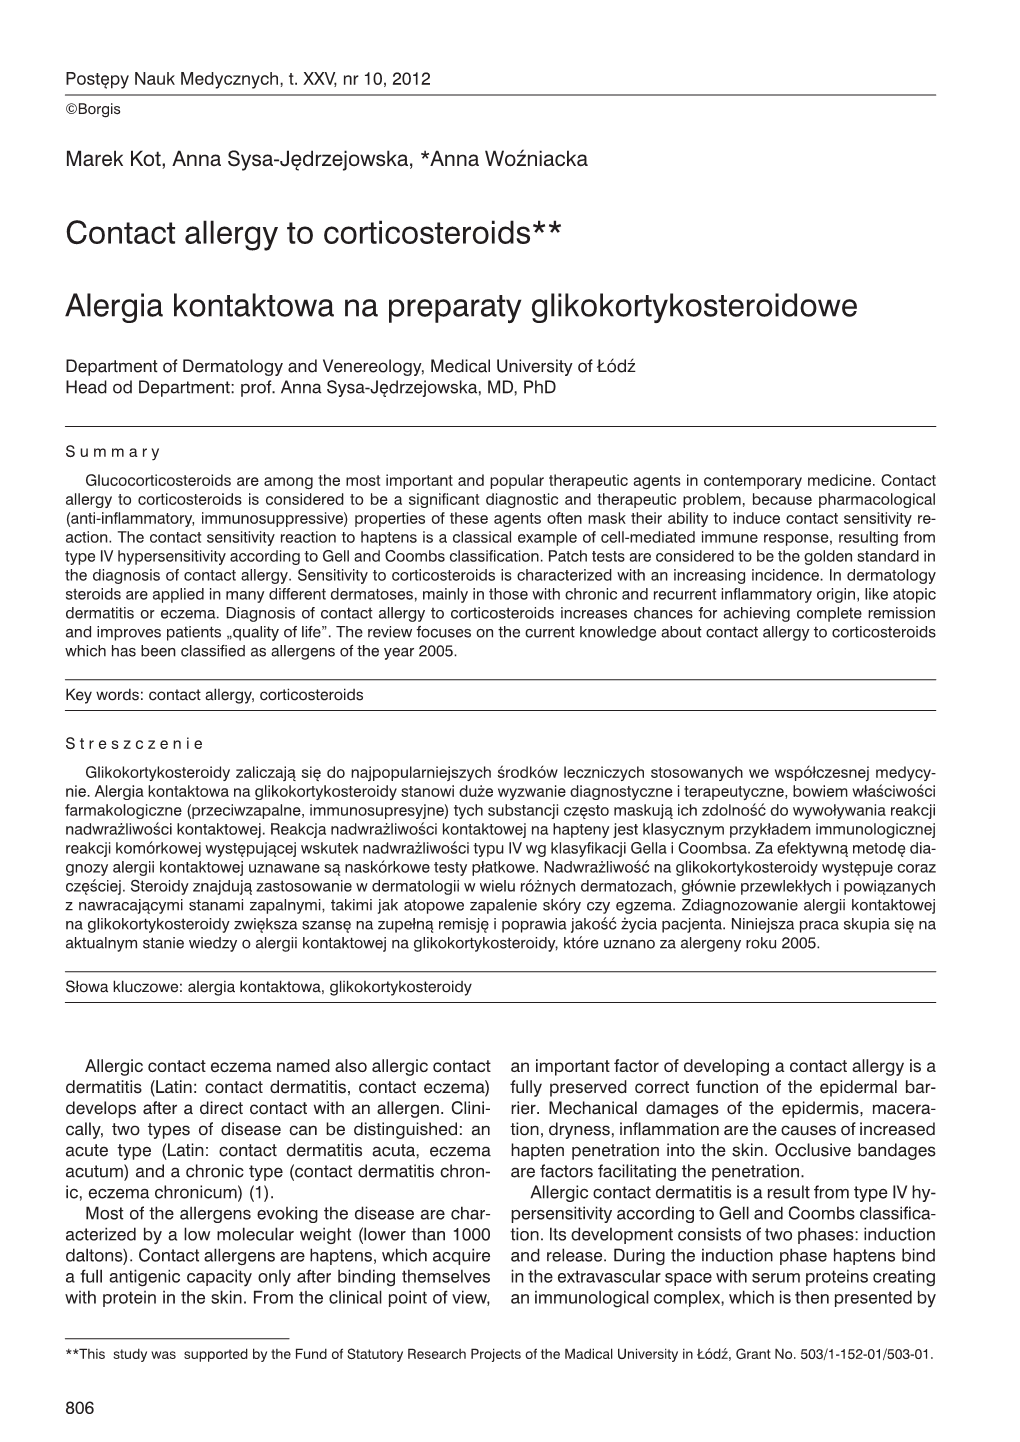 Contact Allergy to Corticosteroids** Alergia Kontaktowa Na Preparaty